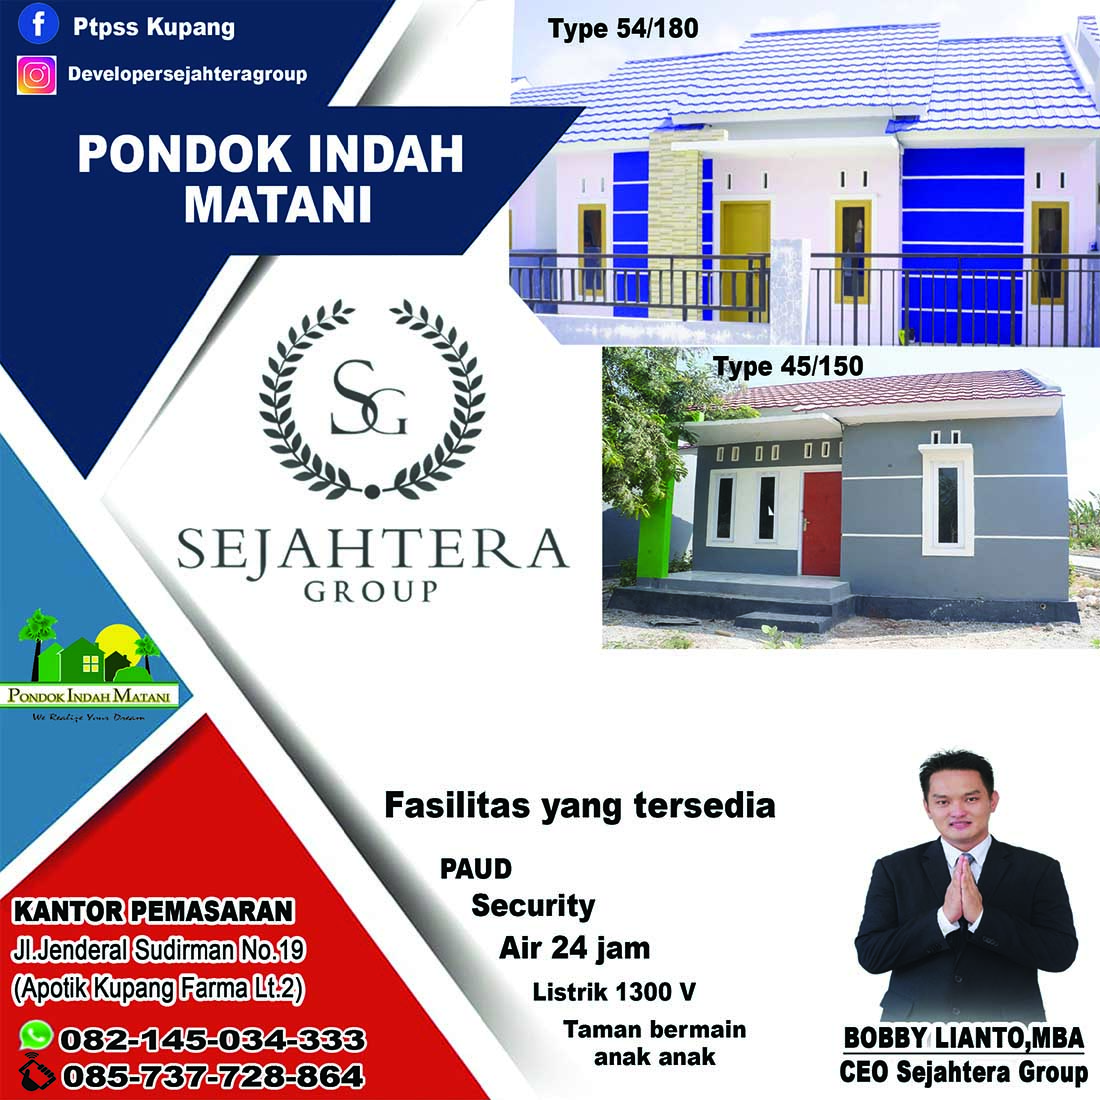 myKupang Pondok Indah Matani estate broshure section